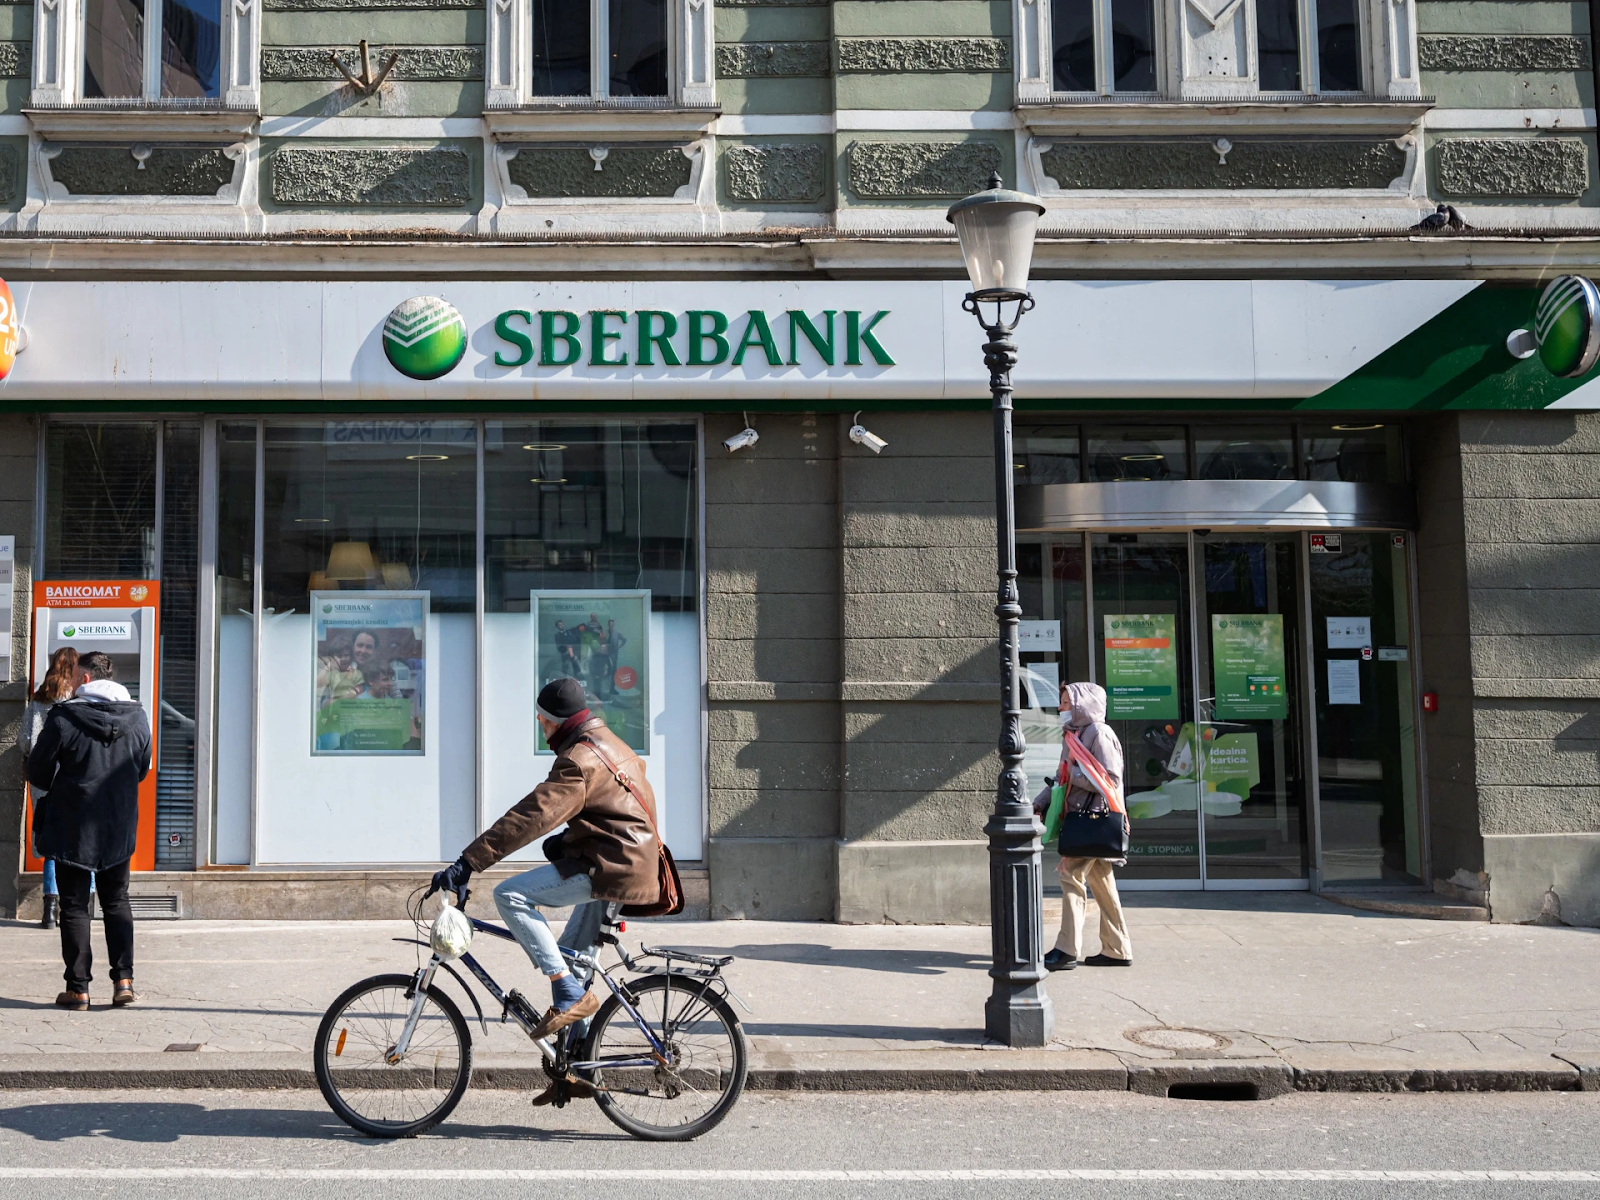 Sberbank deals with cryptocurrencies.